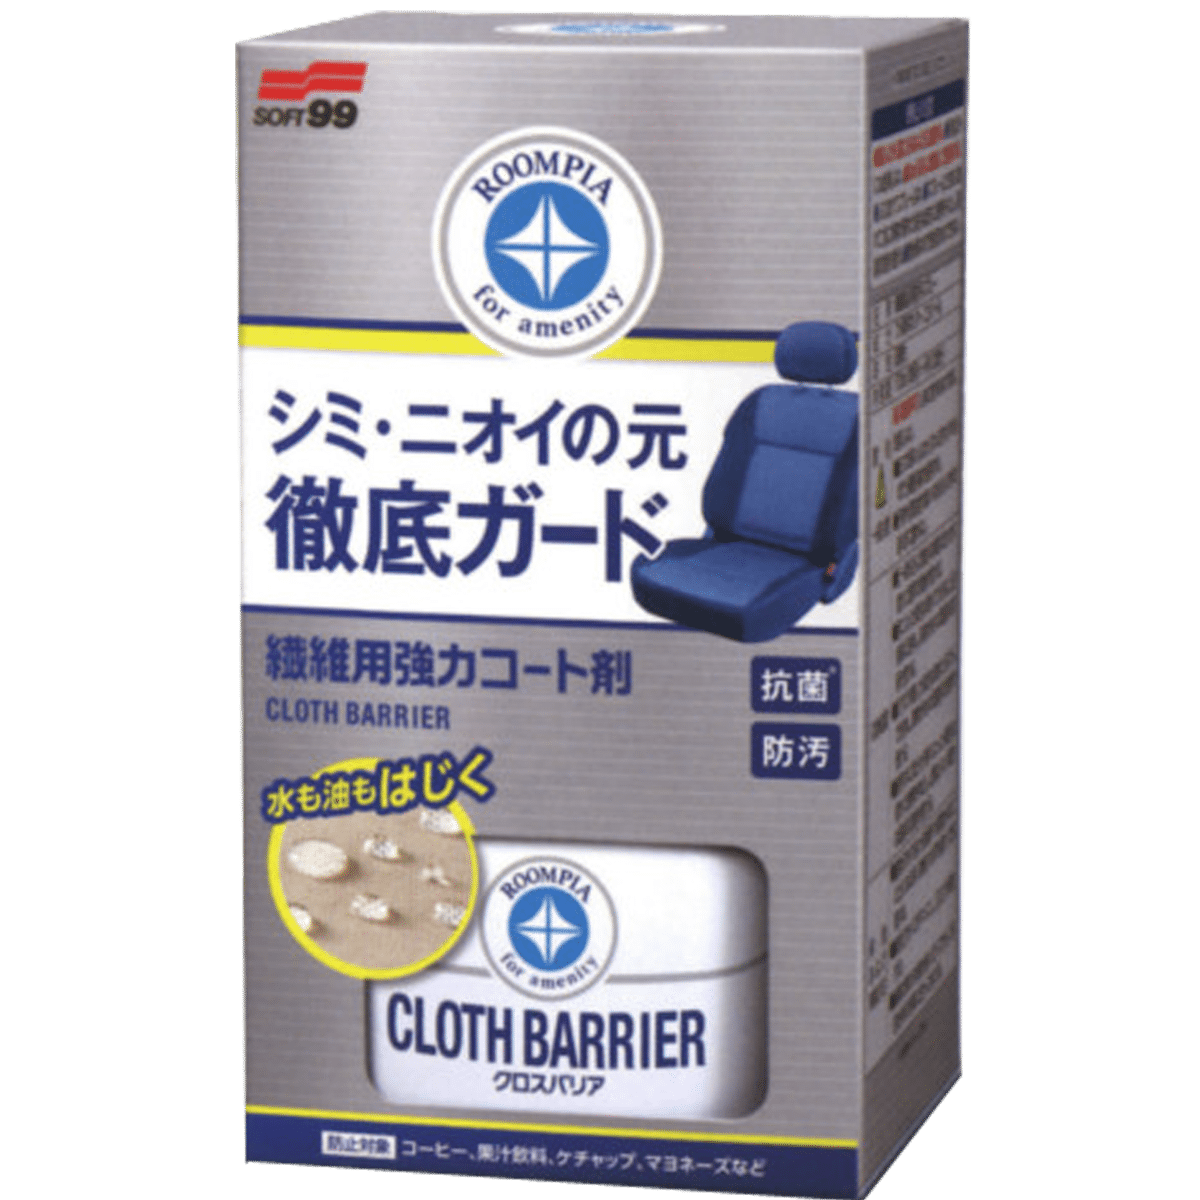 SOFT99 Cloth Barrier Fabric Seat Coat 170ml z Aplikatorem Preparat do Impregnacji Tapicerki